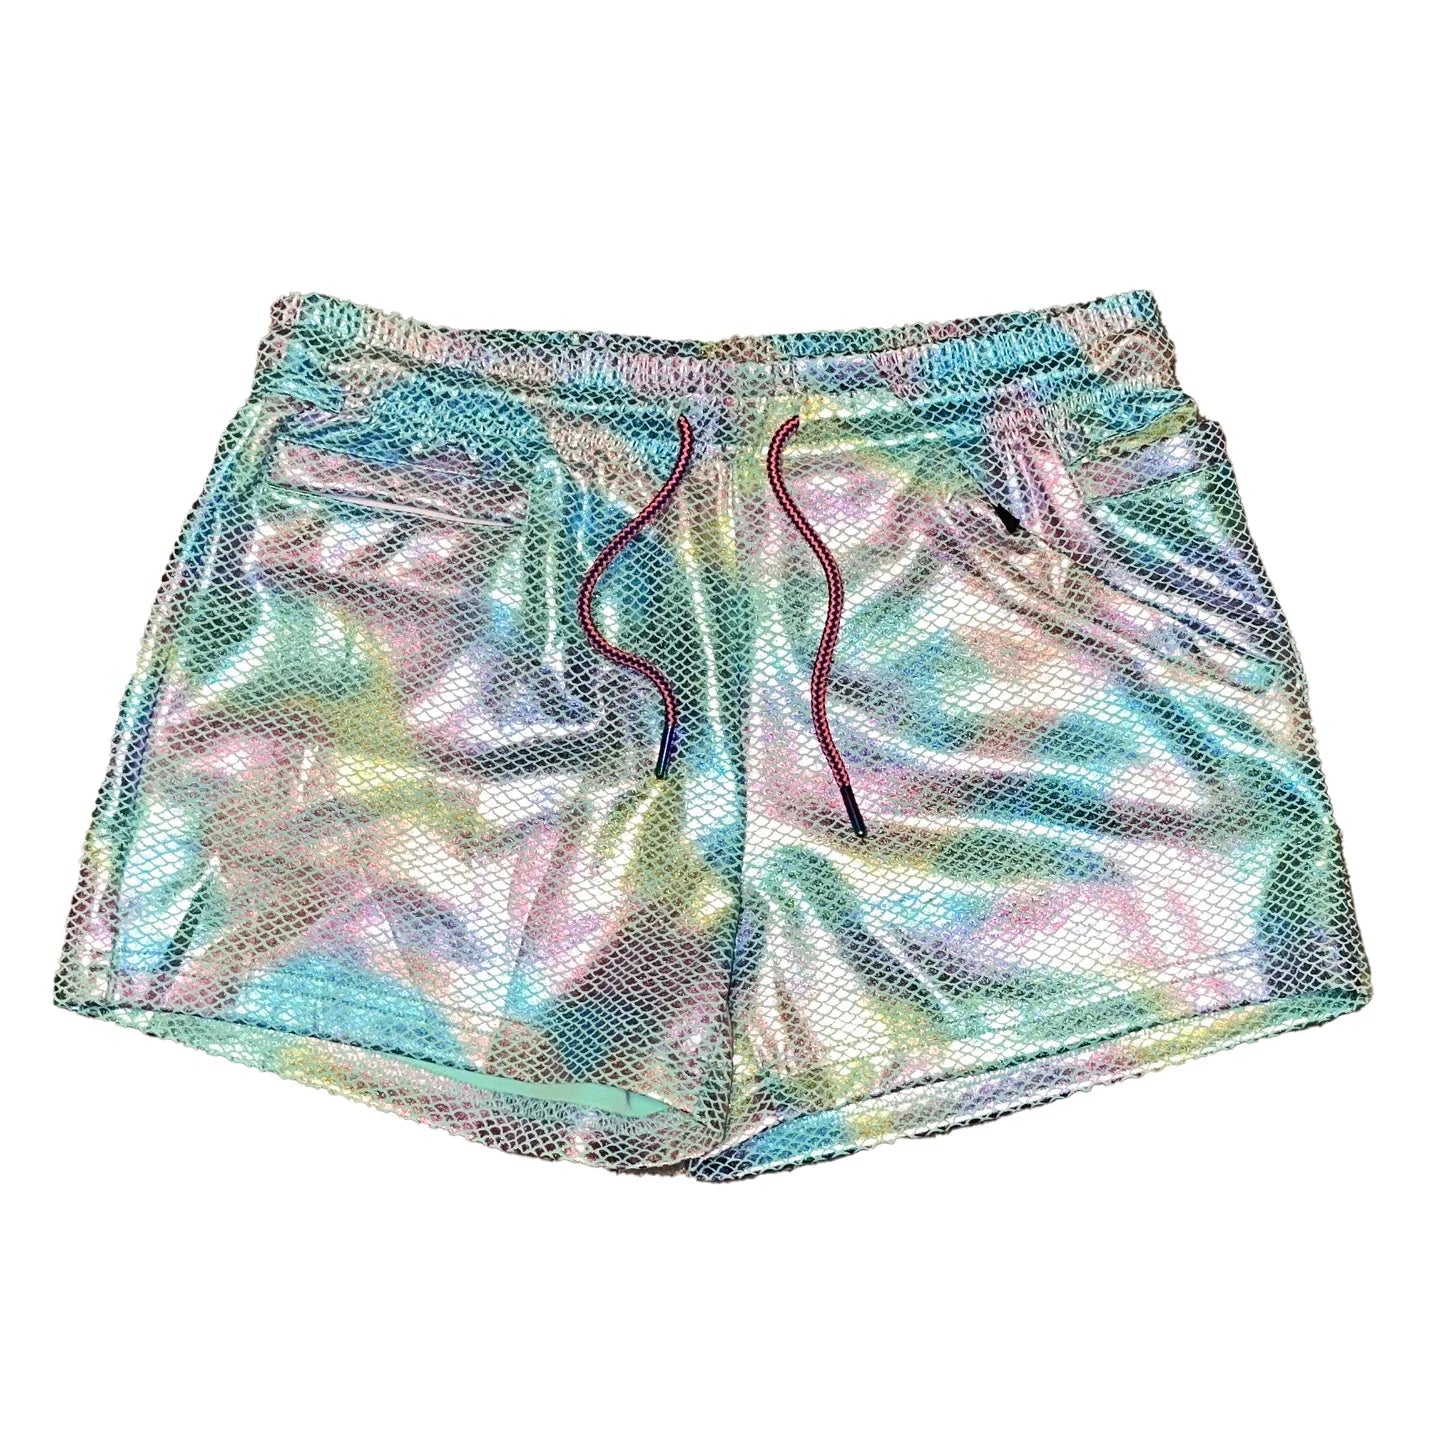 Zaddy Shorts - Rainbow Mermaid